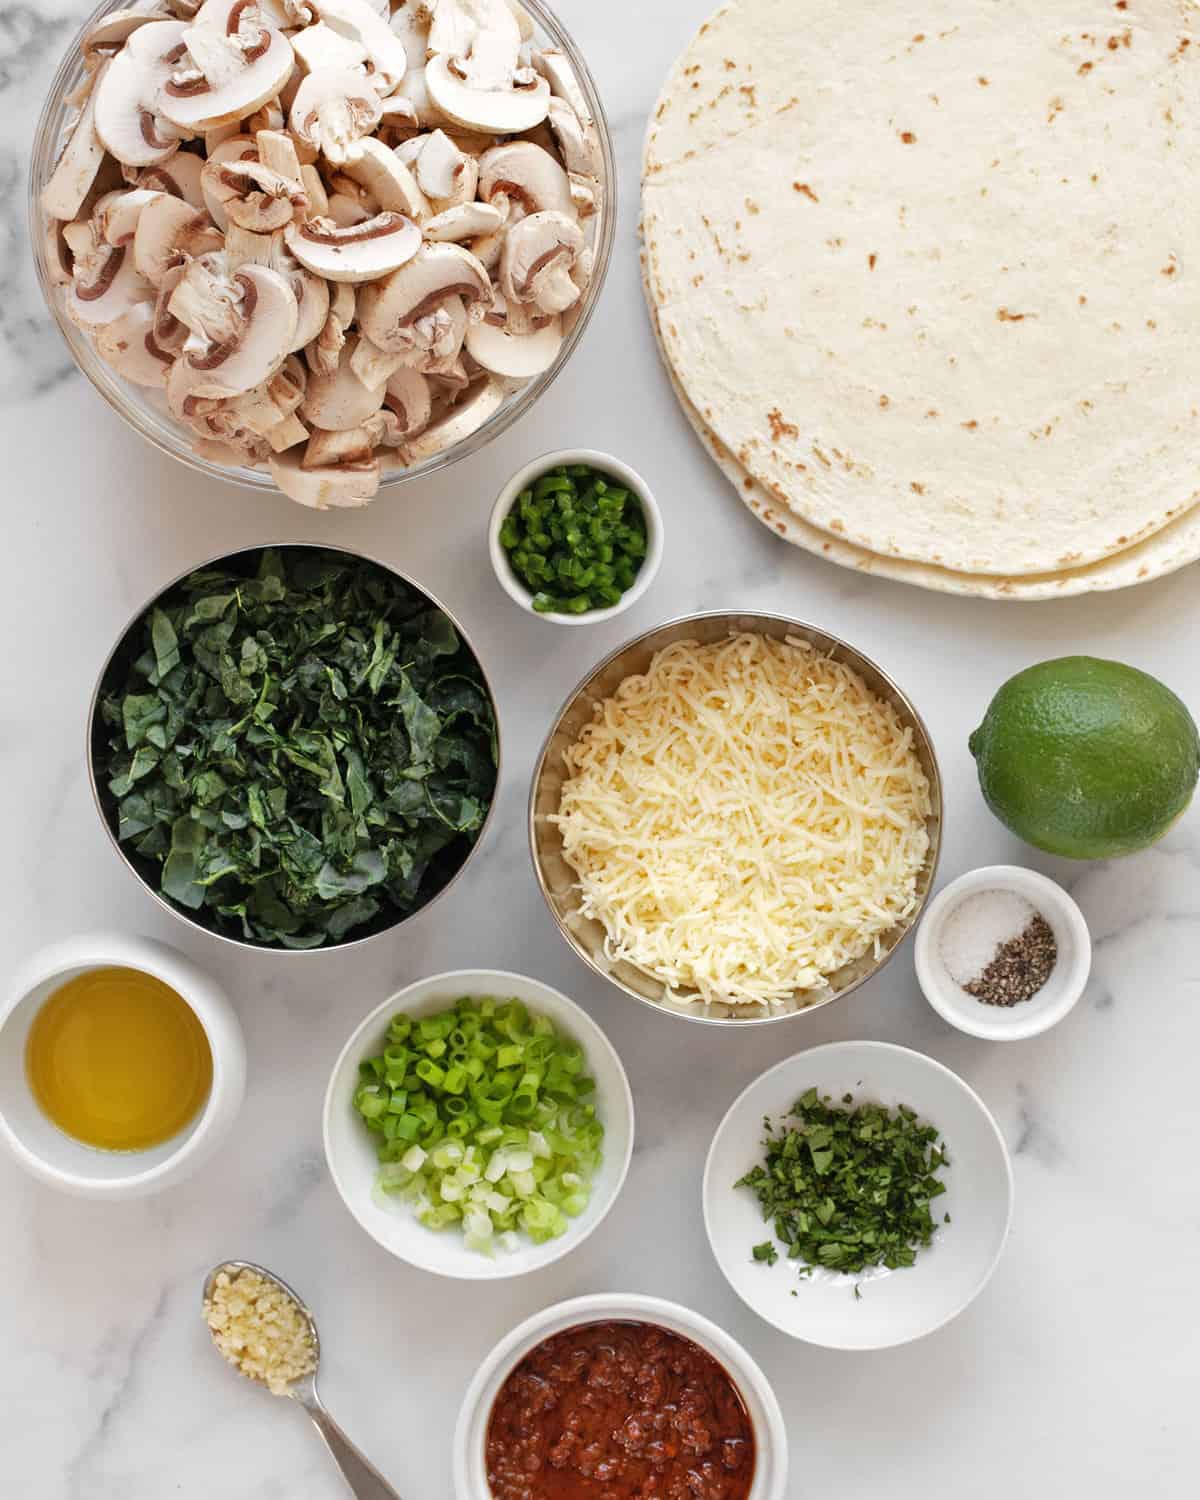 Ingredients including mushrooms, kale, tortillas, jalapeños, garlic, cheese, salt, pepper and oil.